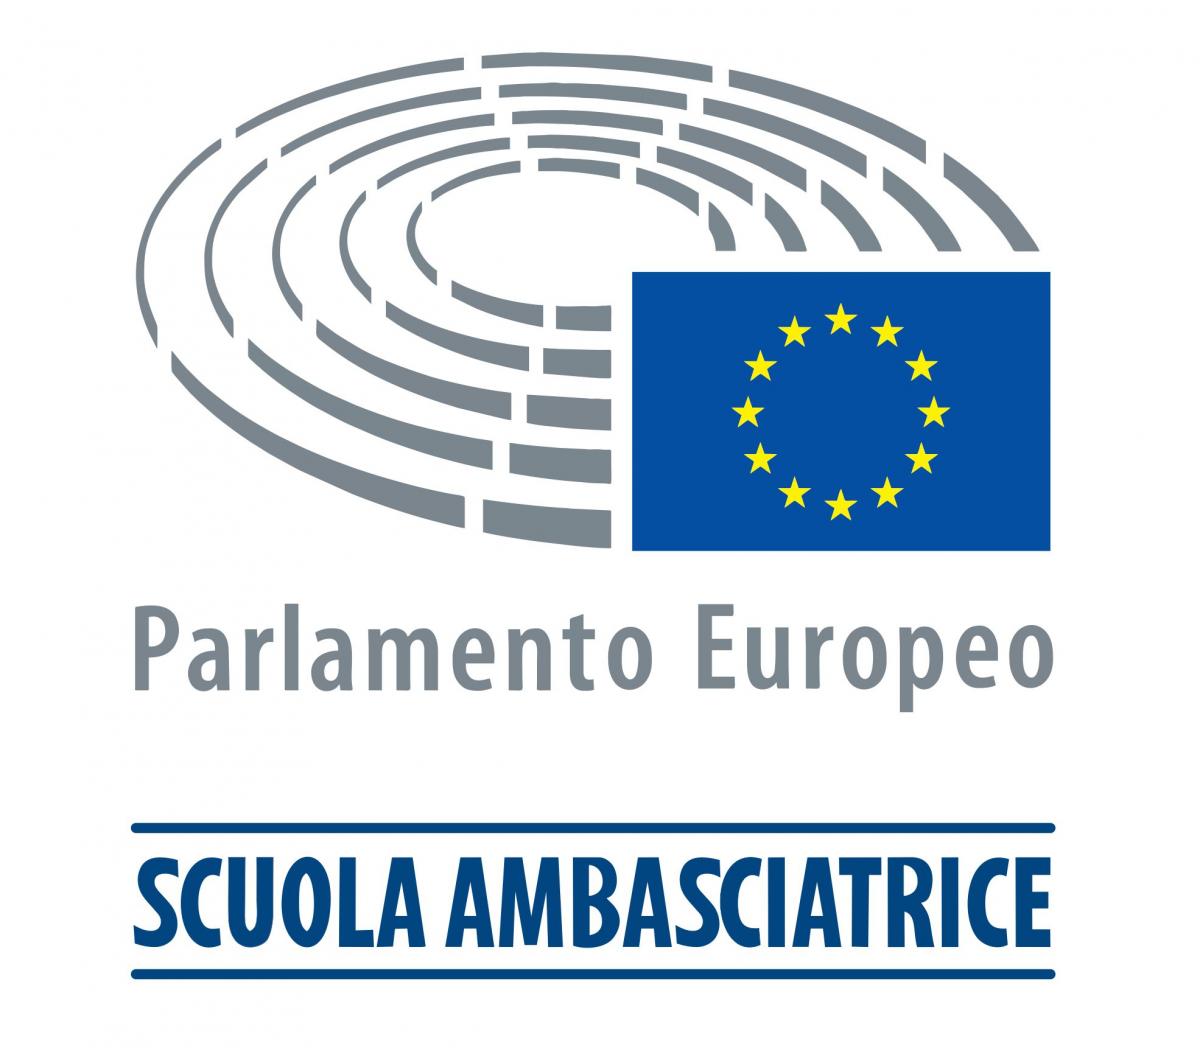 Epas - Scuola Ambasciatrice Parlamento Europeo